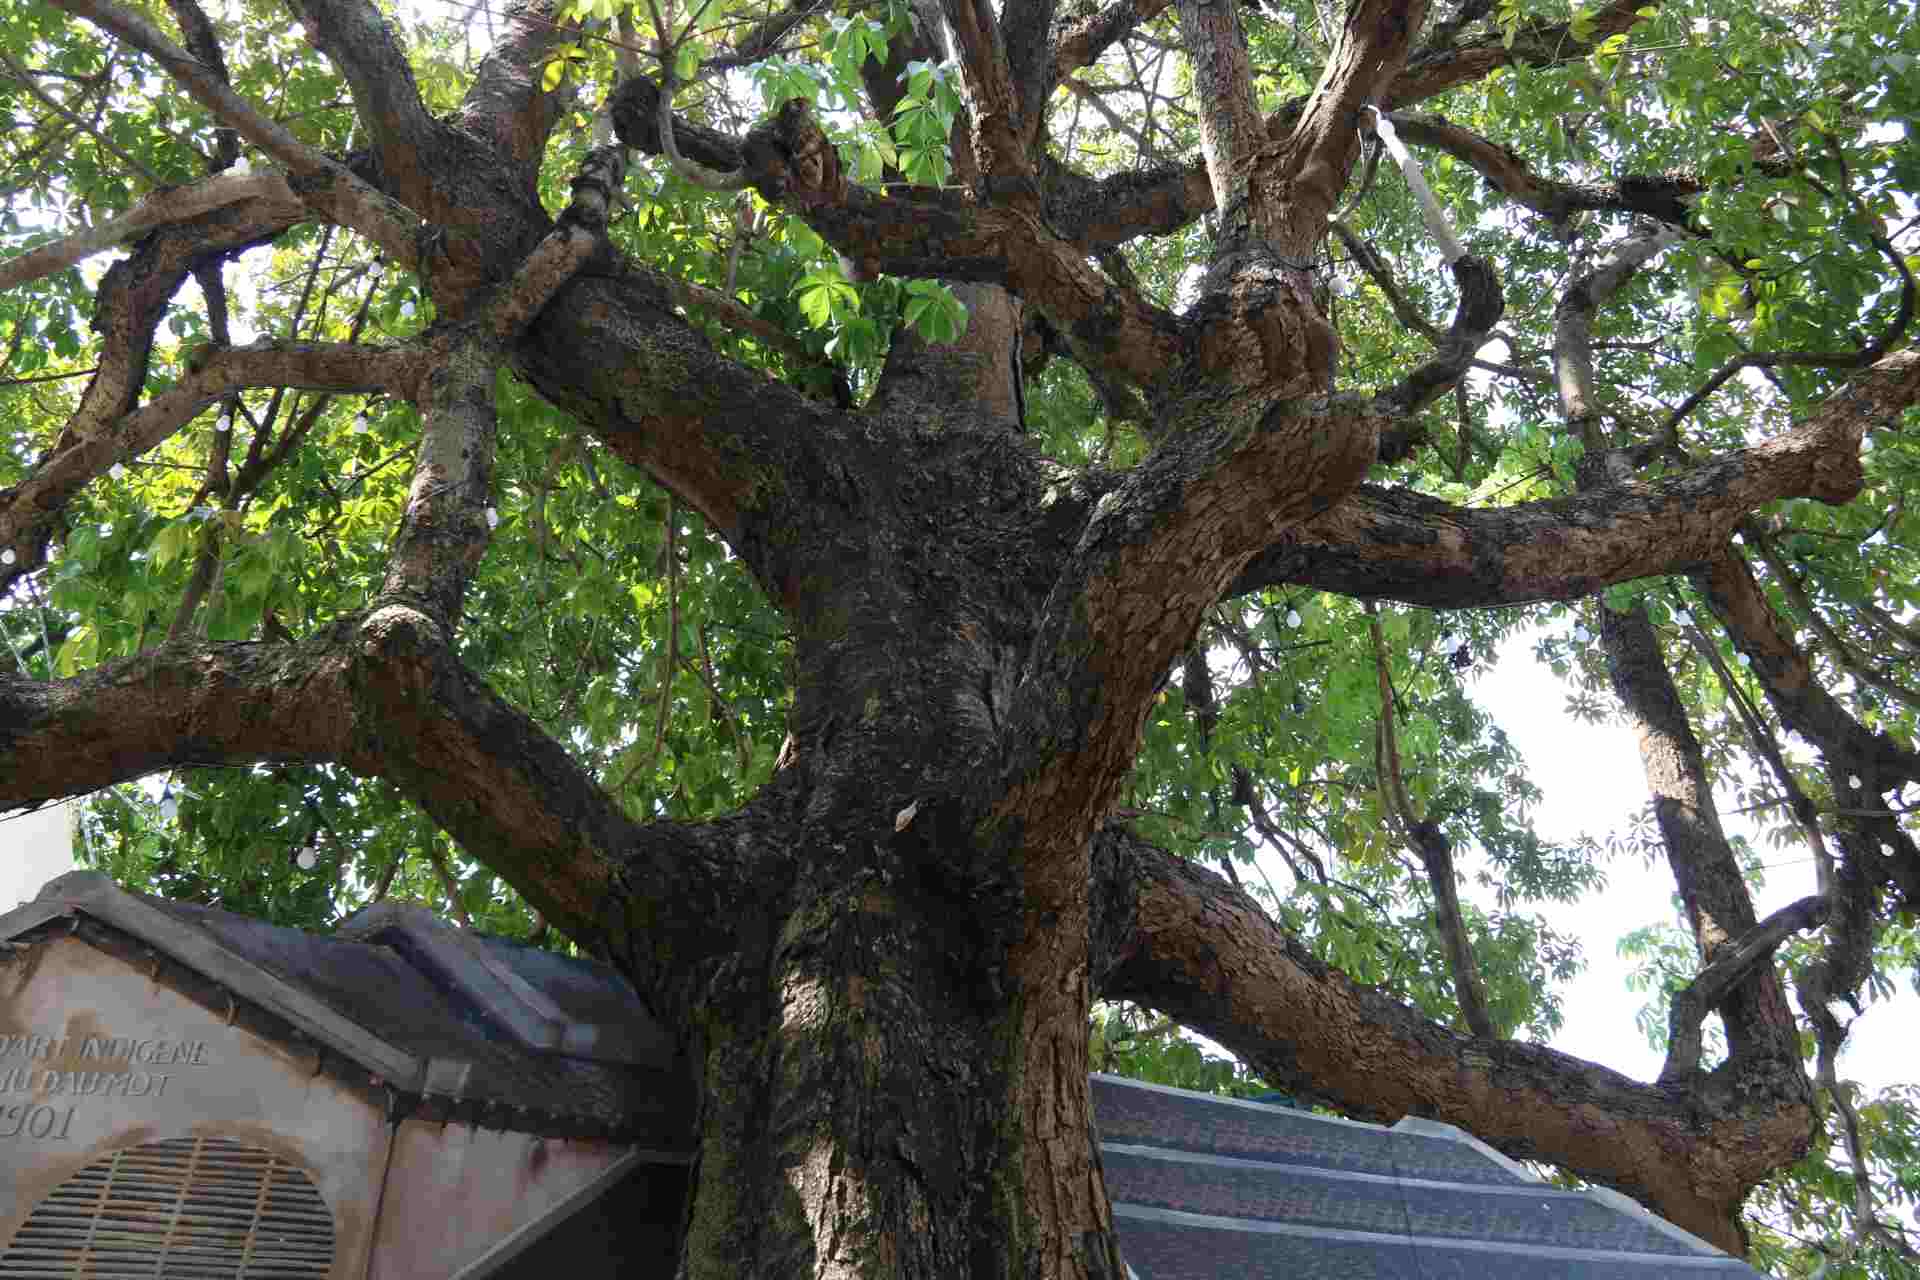 Cây trôm vốn rất bình dị, nằm ở ria đường Bạch Đằng (bên bờ sông Sài Gòn), bình thường ít ai chú ý. Điều khiến dư luận quan tâm này là thông tin cây trôm có tuổi đời lên đến 150 năm và vừa được công nhận là cây di sản Việt Nam.